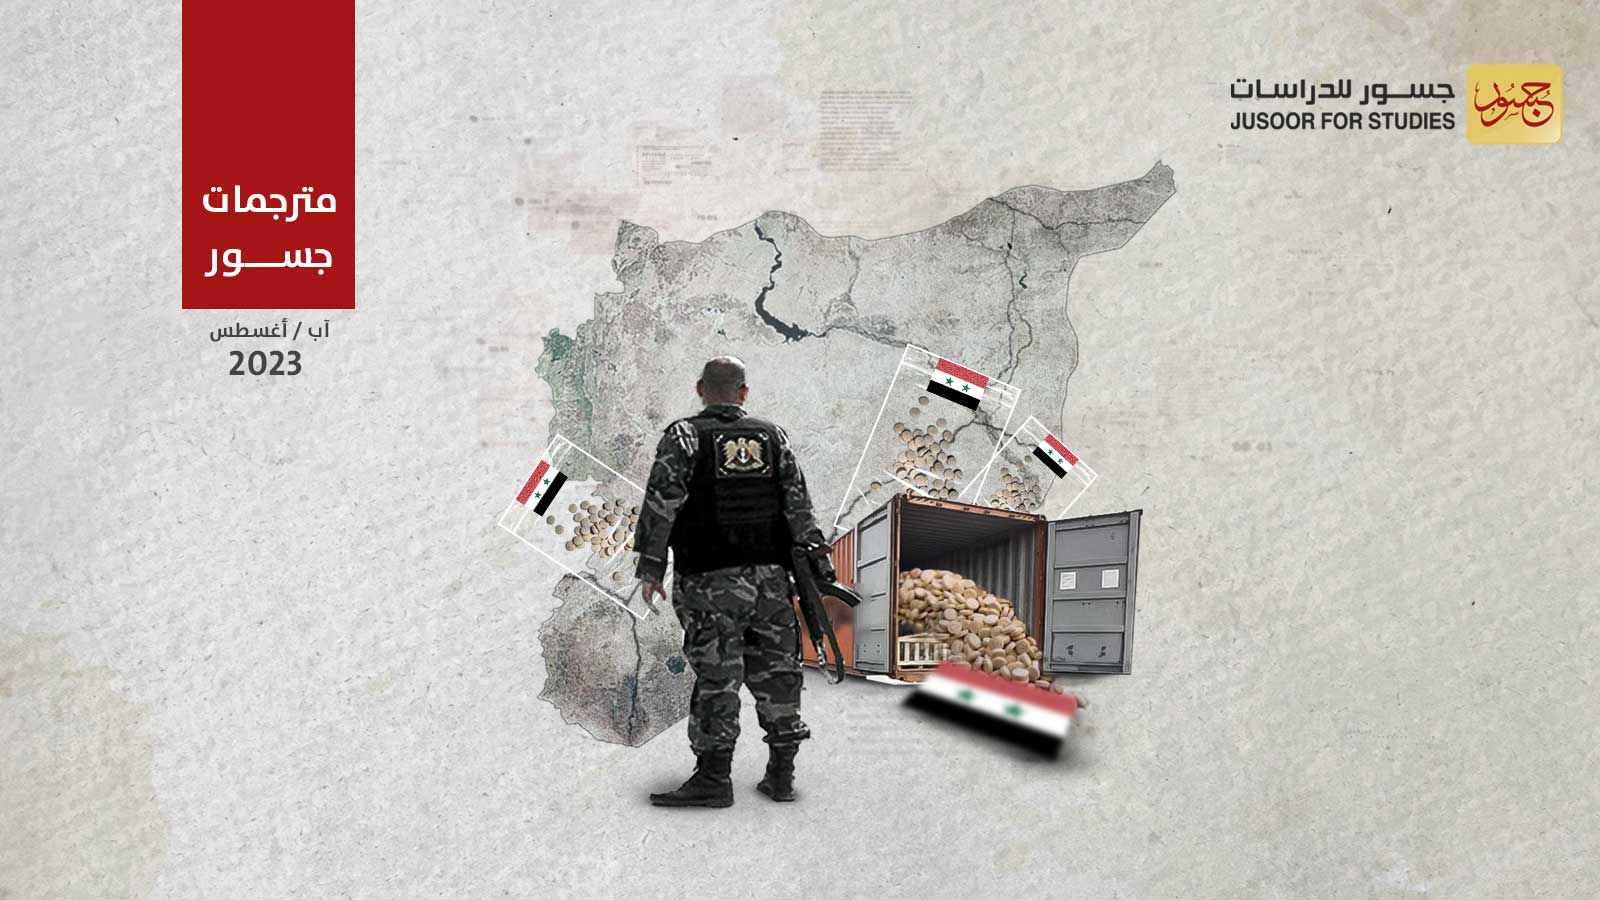 الكبتاغون من عقار للمقاتلين إلى منتج حوّل سورية لدولة مخدّرات